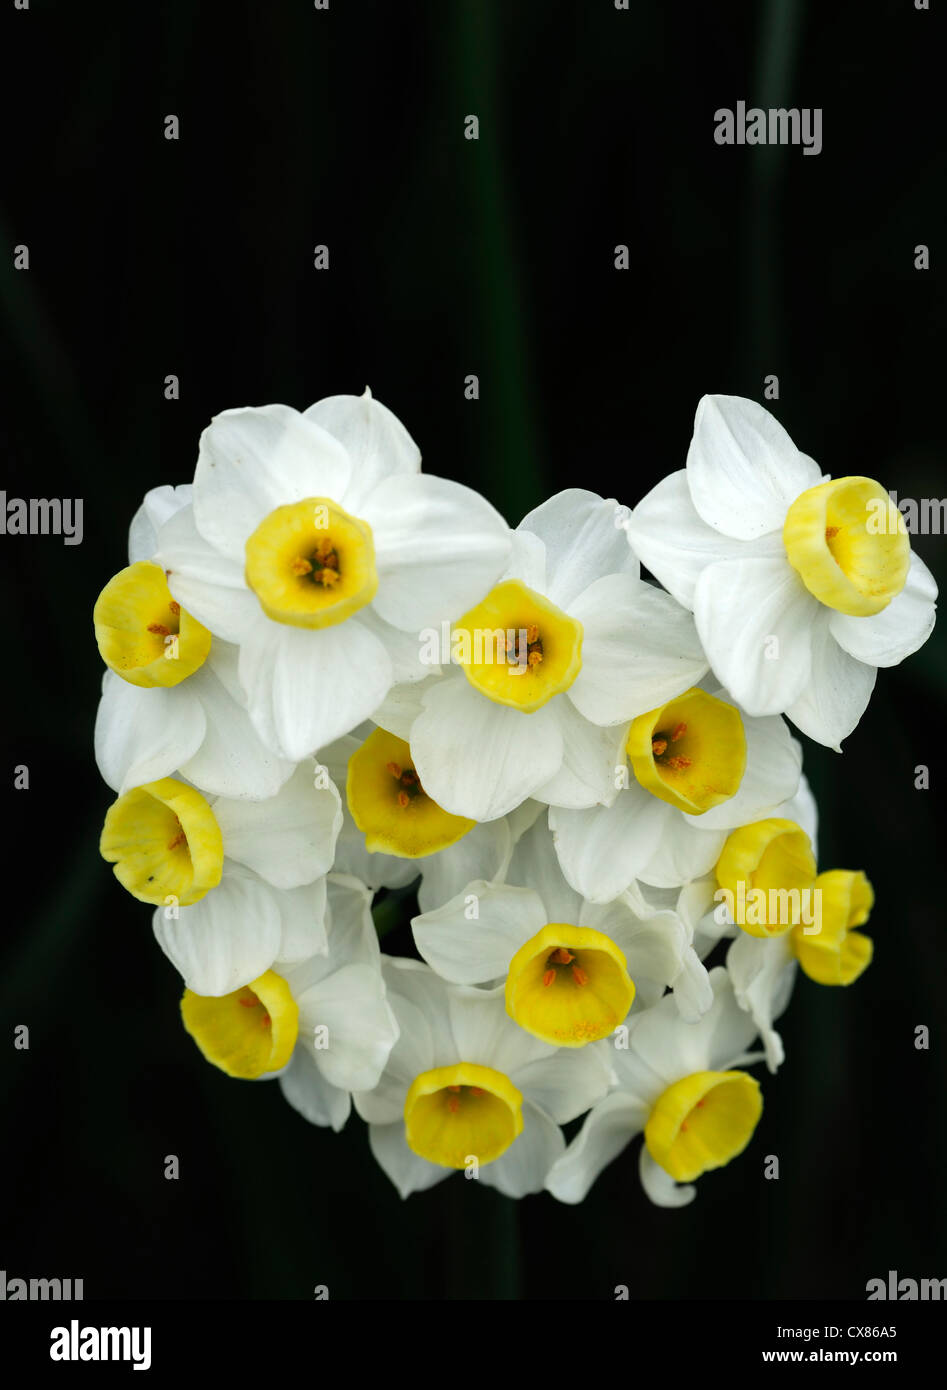 Narcissus tazetta géranium blanc jaune jonquille à têtes multiples fleurs jonquilles narcisses bulbes de fleurs de printemps Banque D'Images